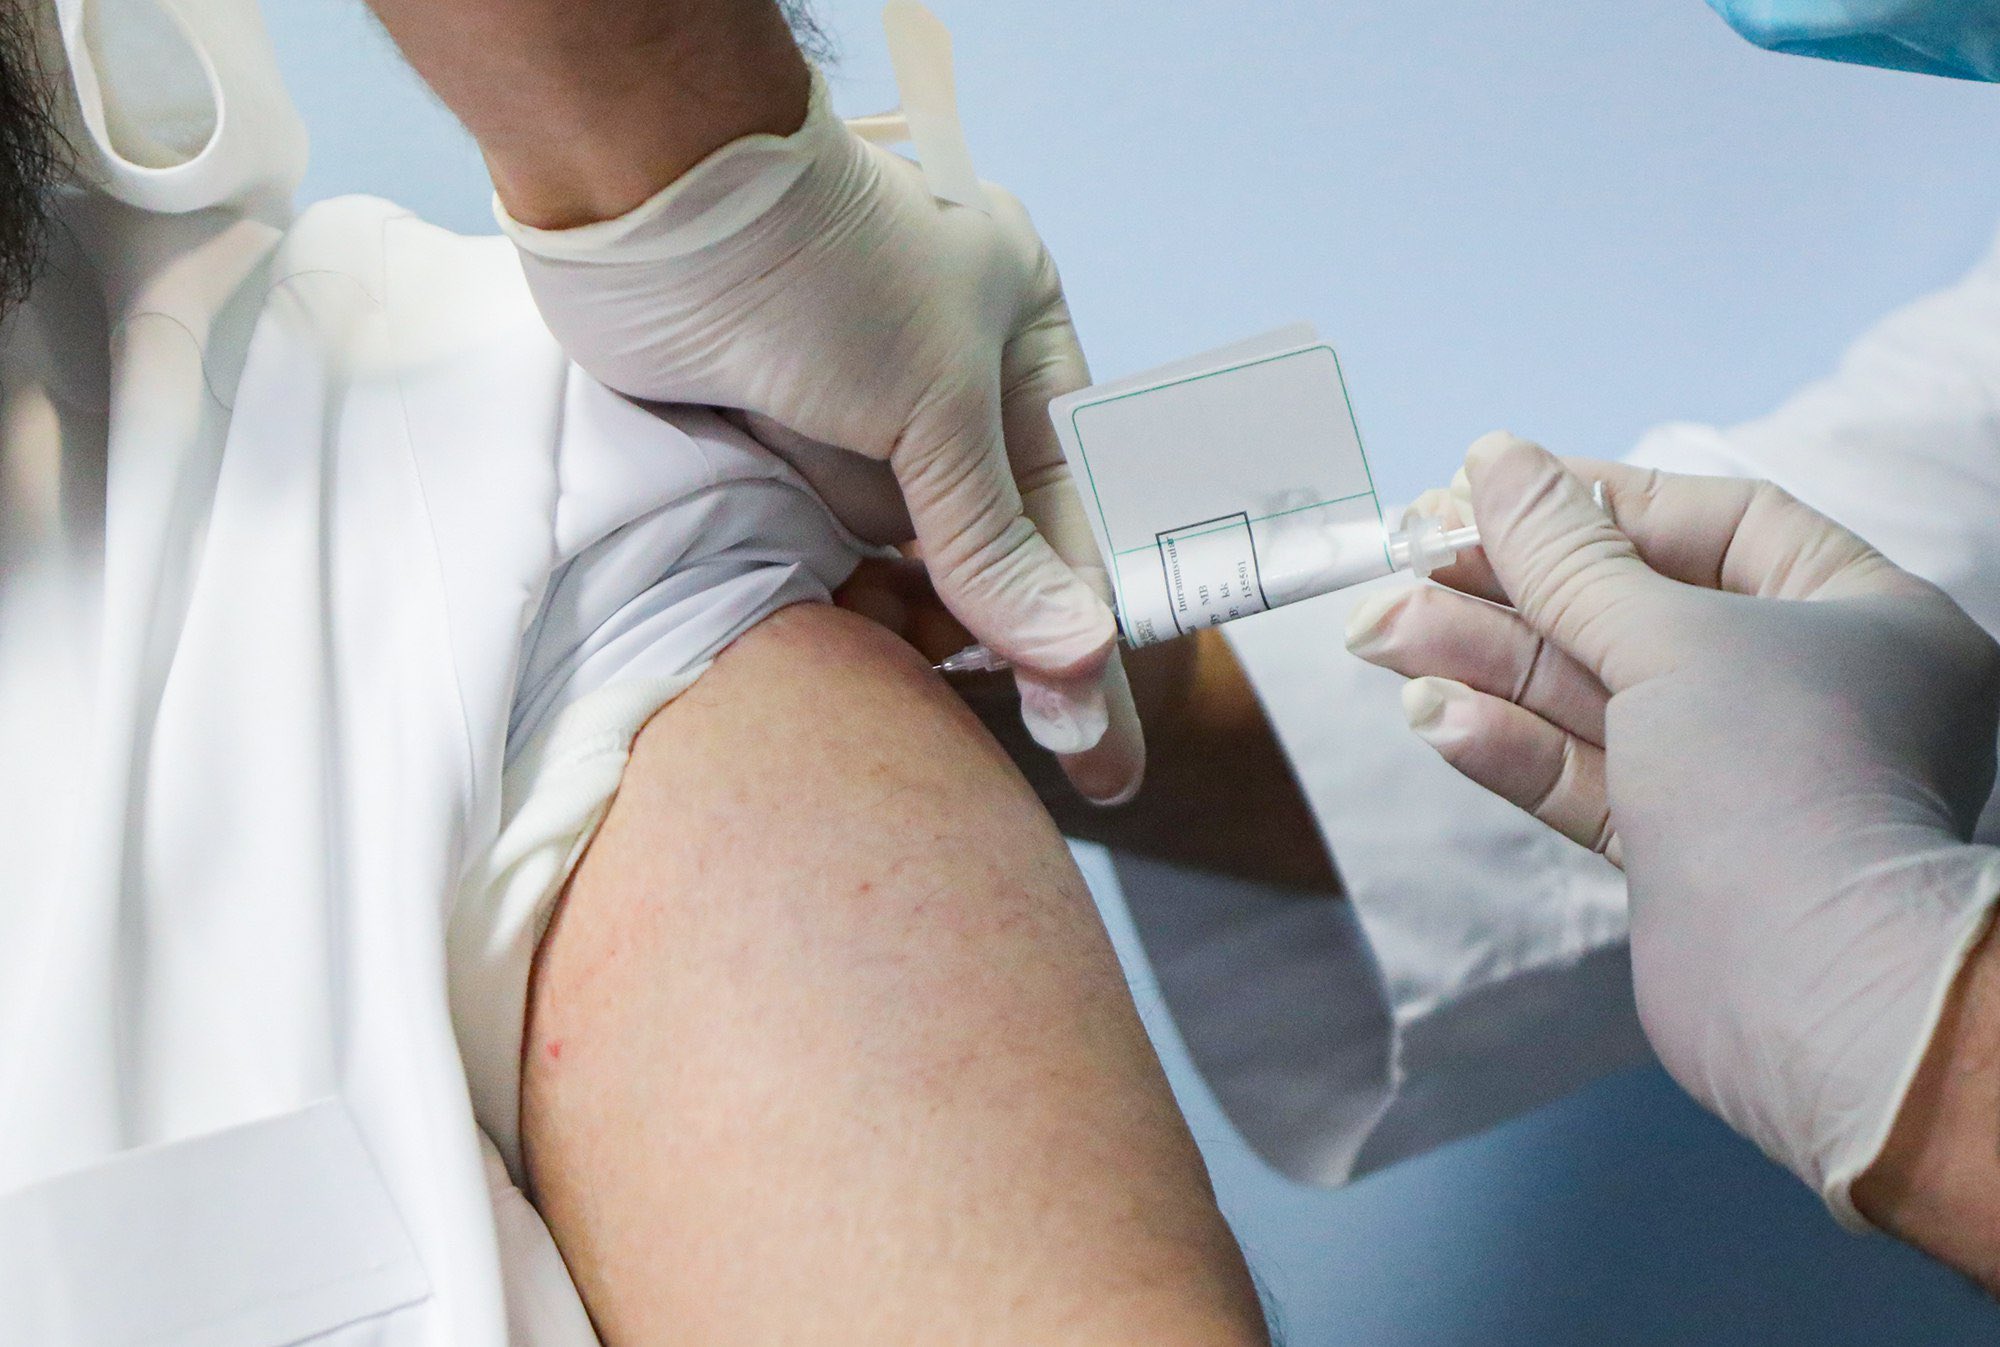 الصحة ترد على مريض بالحساسية: في هذه الحالة يمنع أخذ اللقاح